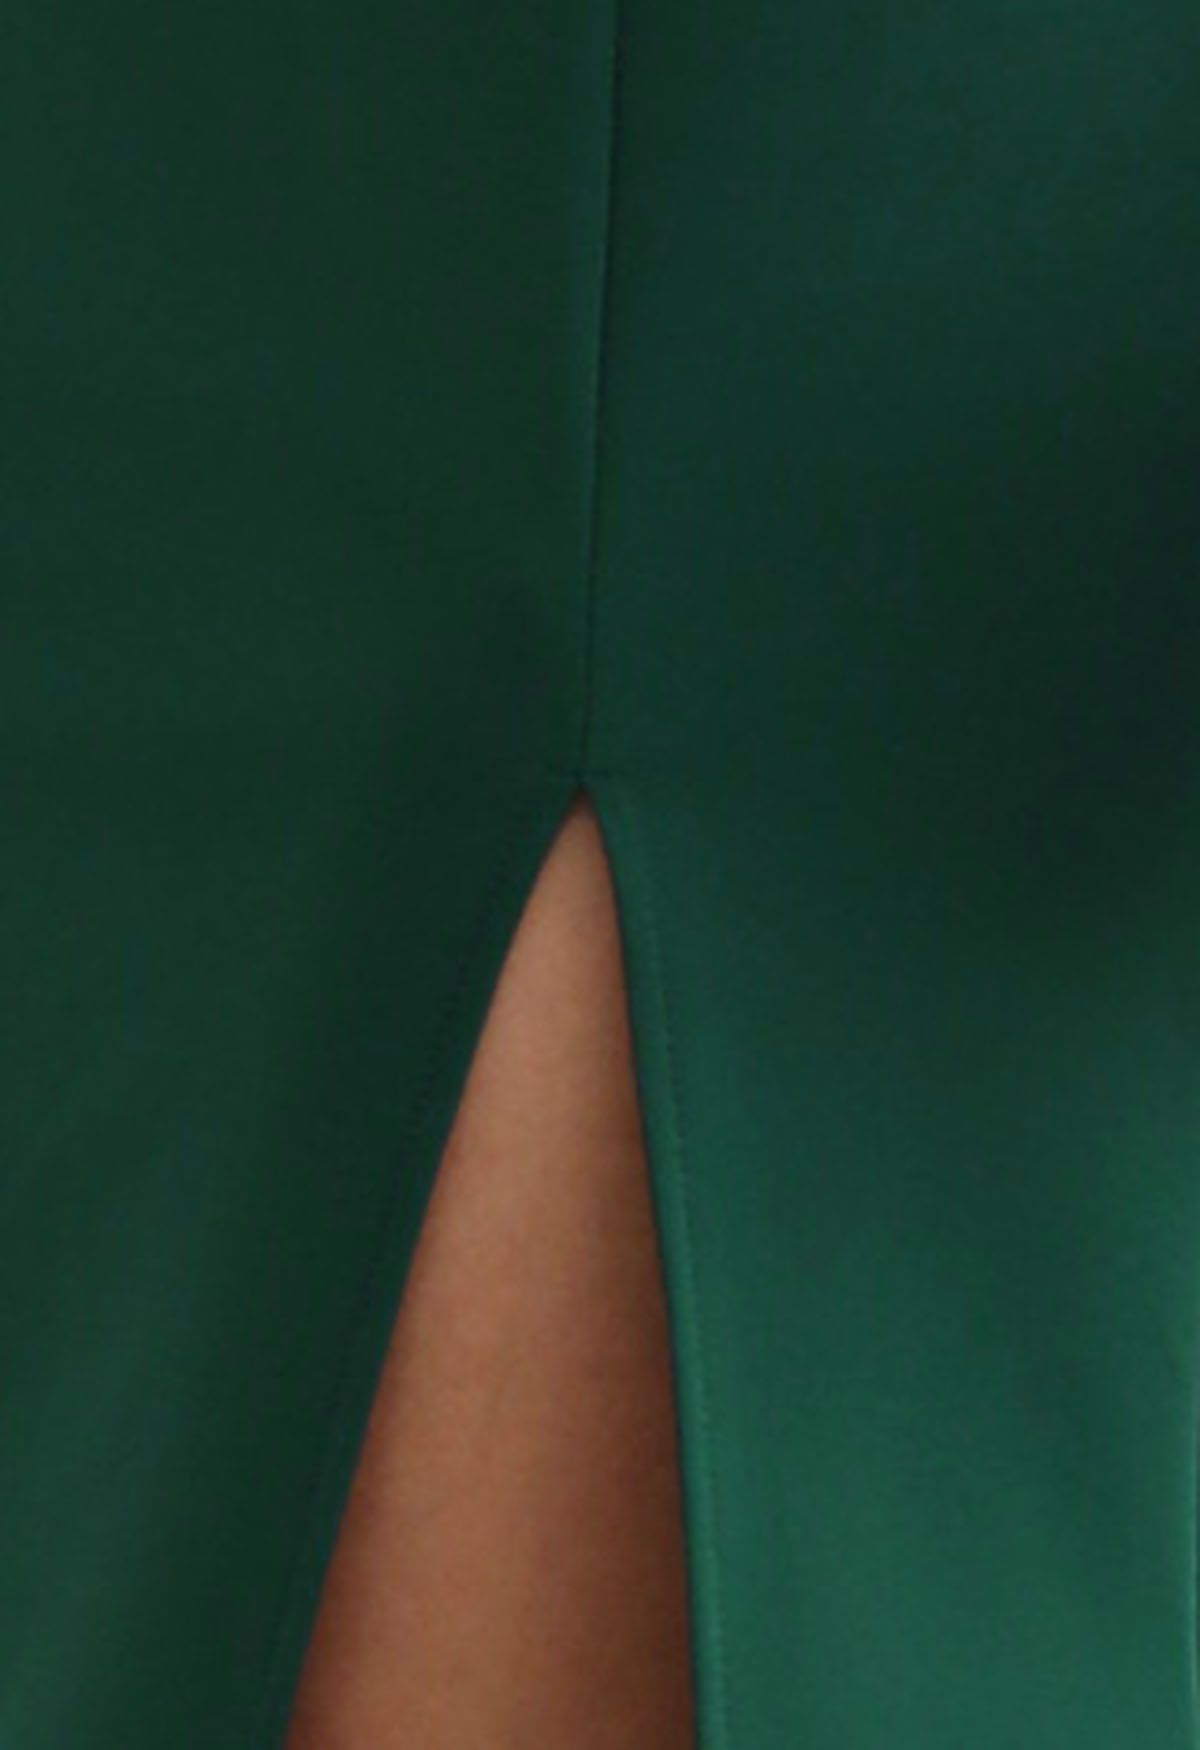 ربطة الكتف عالية الشق ثوب ماكسي باللون الأخضر الداكن